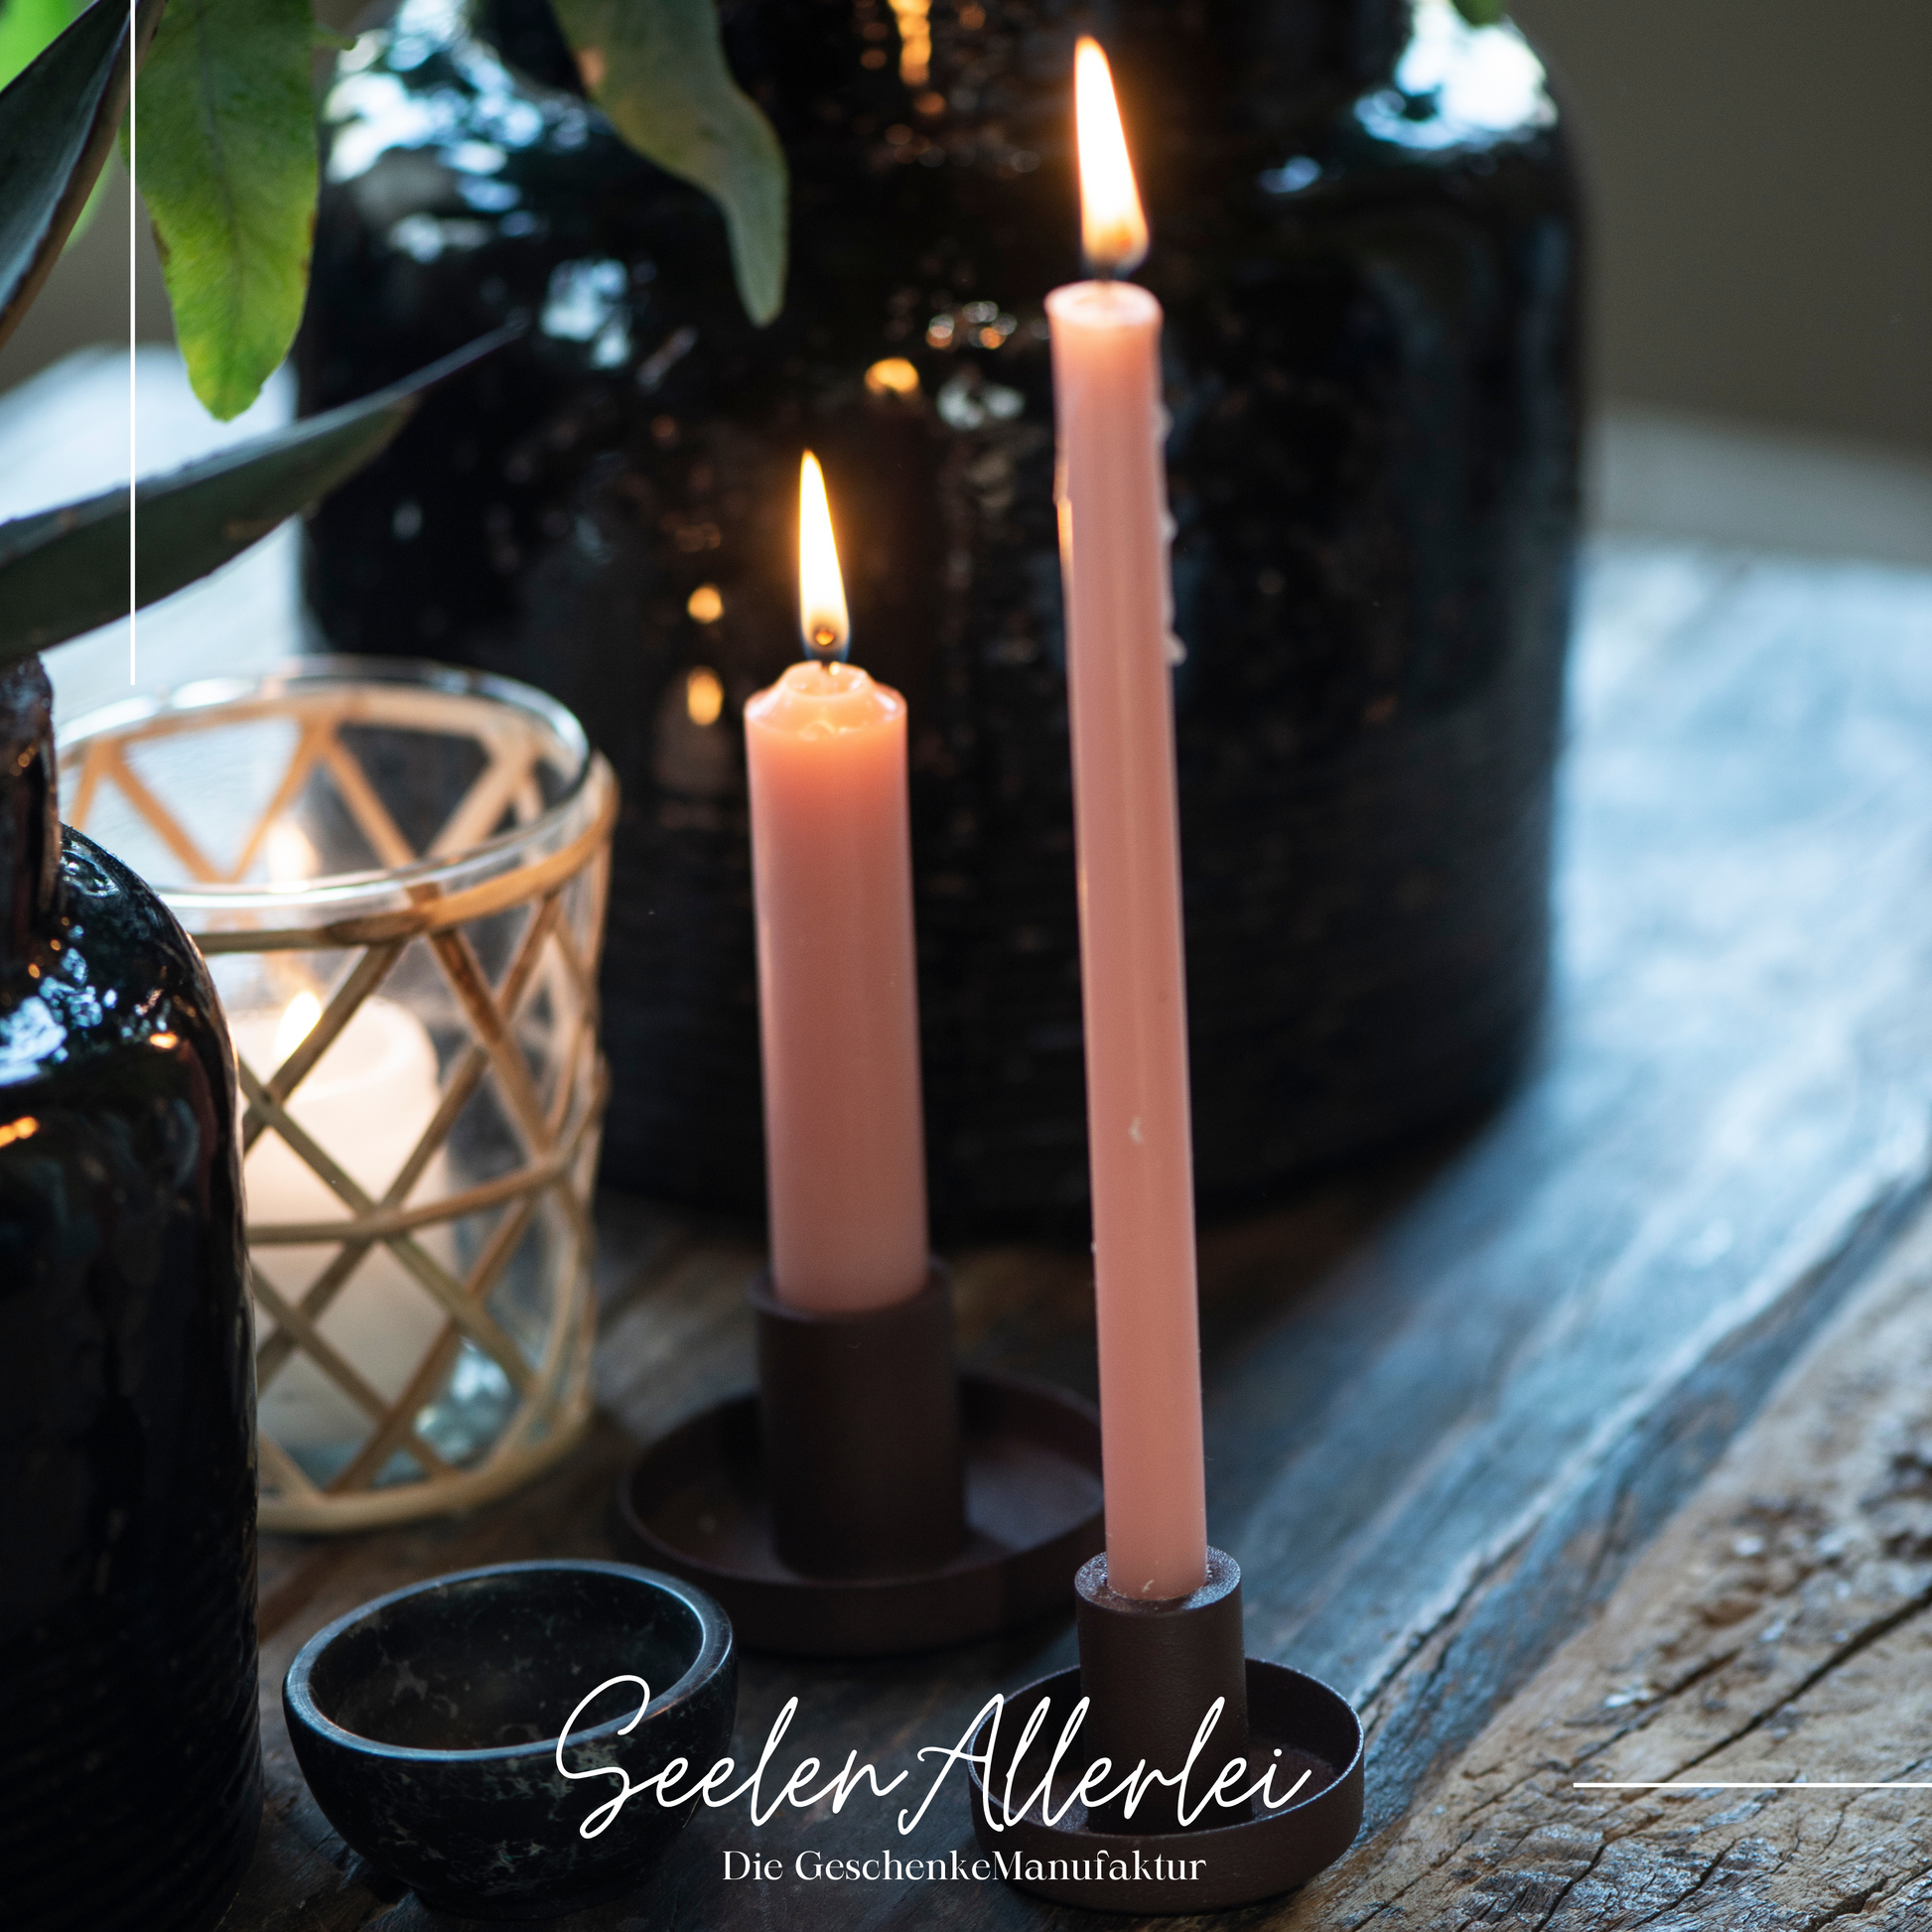 Kerzenhalter in schwarz für dünne Kerze steht mit einer brennenden dünnen Kerze neben einem Kerzenhalter für normale Stabkerzen.